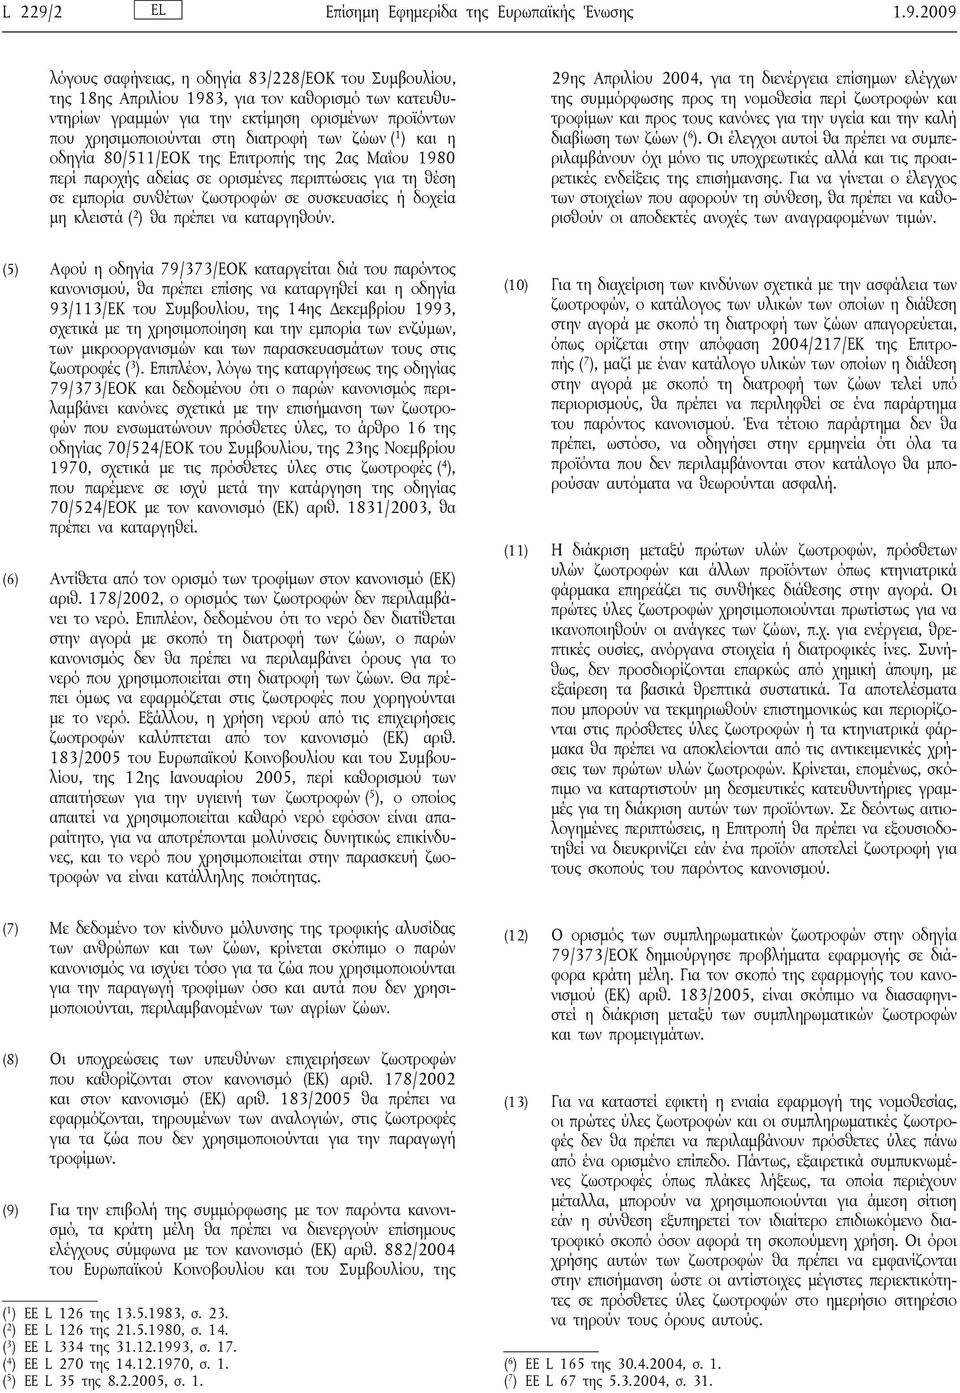 2009 λόγους σαφήνειας, η οδηγία 83/228/ΕΟΚ του Συμβουλίου, της 18ης Απριλίου 1983, για τον καθορισμό των κατευθυντηρίων γραμμών για την εκτίμηση ορισμένων προϊόντων που χρησιμοποιούνται στη διατροφή